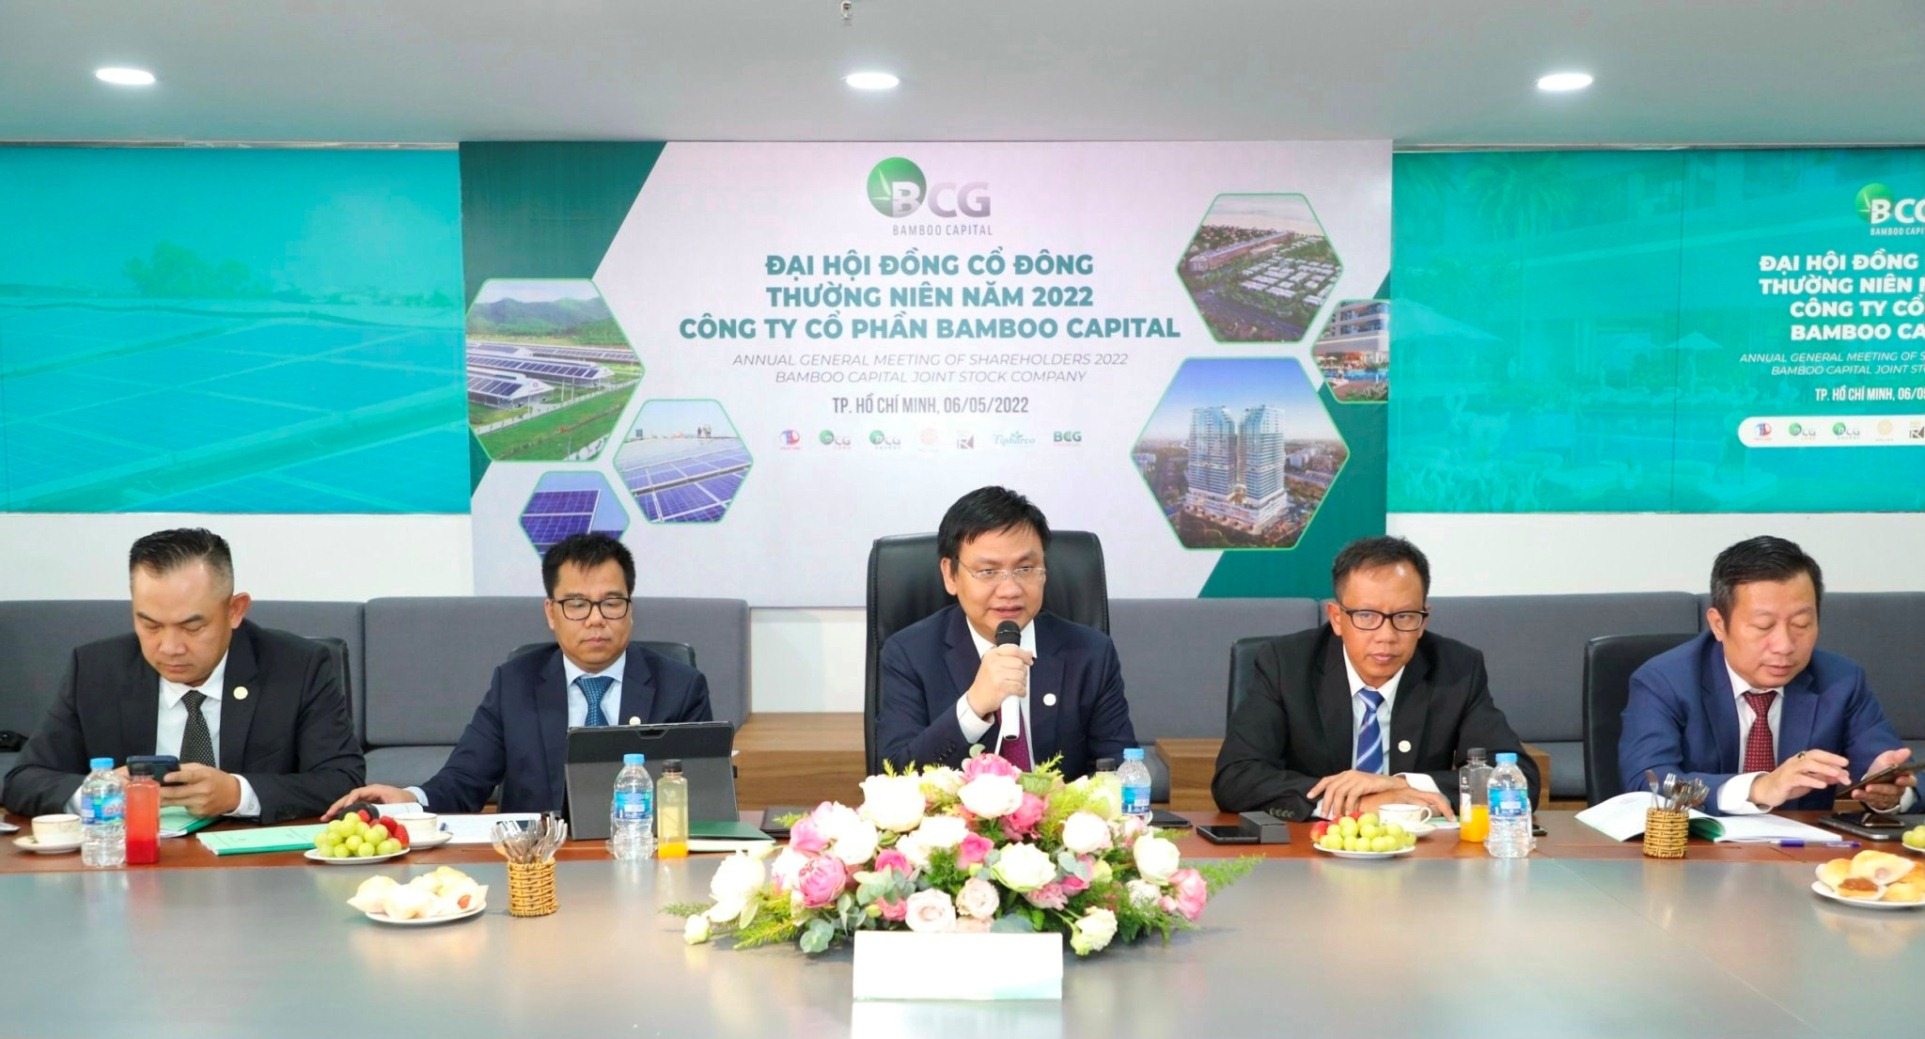 Bamboo Capital - một trong những doanh nghiệp hàng đầu của Việt Nam, với nhiều lĩnh vực hoạt động đa dạng và có tầm ảnh hưởng lớn trong cộng đồng. Xem hình ảnh liên quan để hiểu hơn về sự thăng tiến của Bamboo Capital.